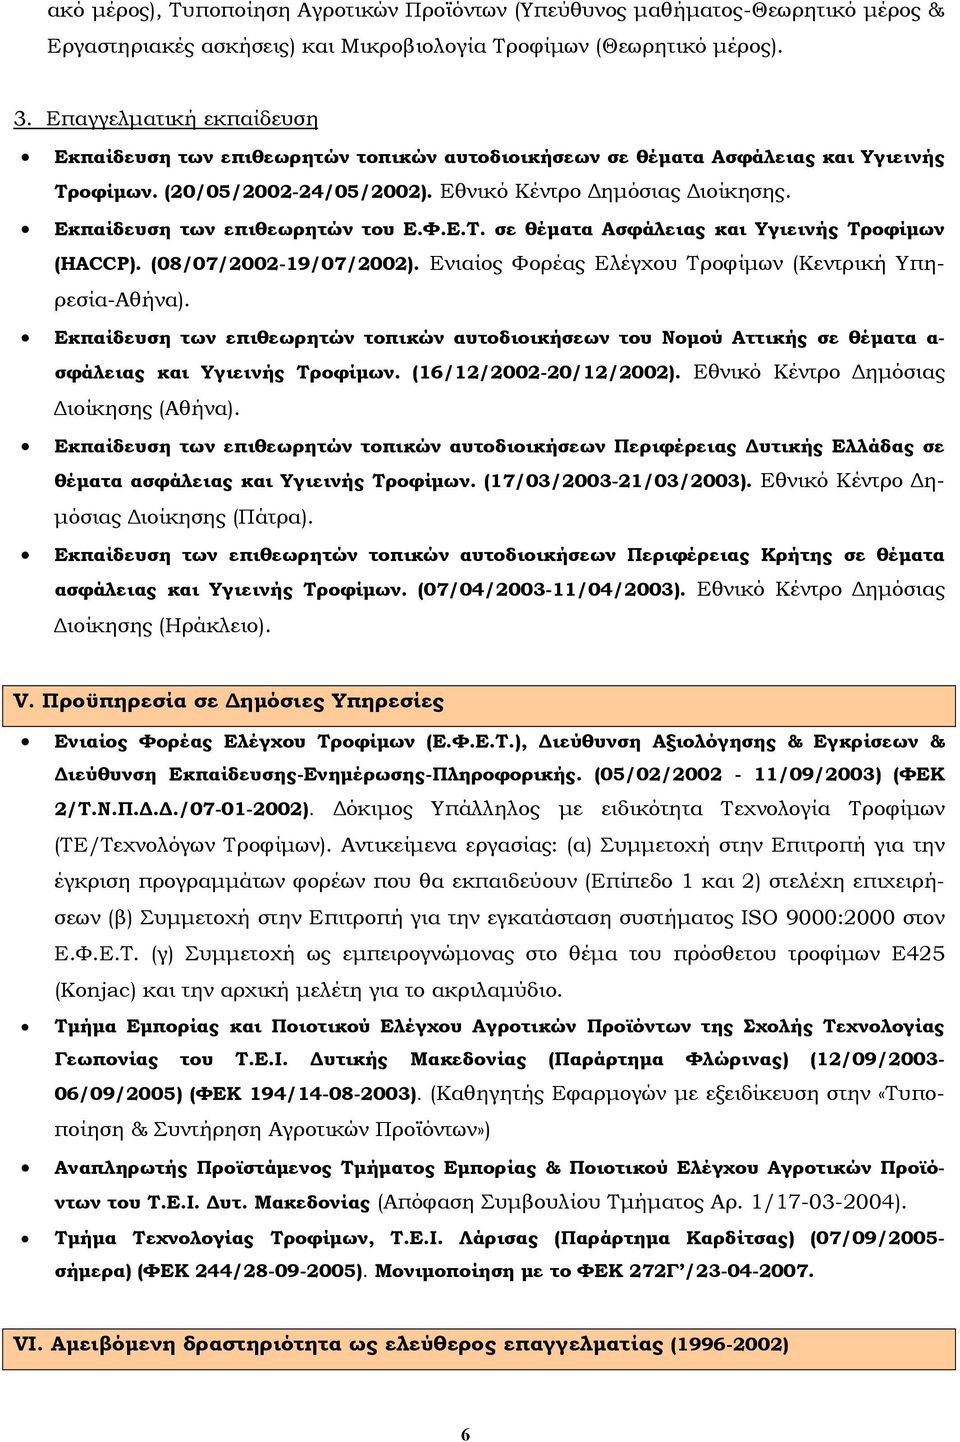 Εκπαίδευση των επιθεωρητών του Ε.Φ.Ε.Τ. σε θέματα Ασφάλειας και Υγιεινής Τροφίμων (HACCP). (08/07/2002-19/07/2002). Ενιαίος Φορέας Ελέγχου Τροφίμων (Κεντρική Υπηρεσία-Αθήνα).